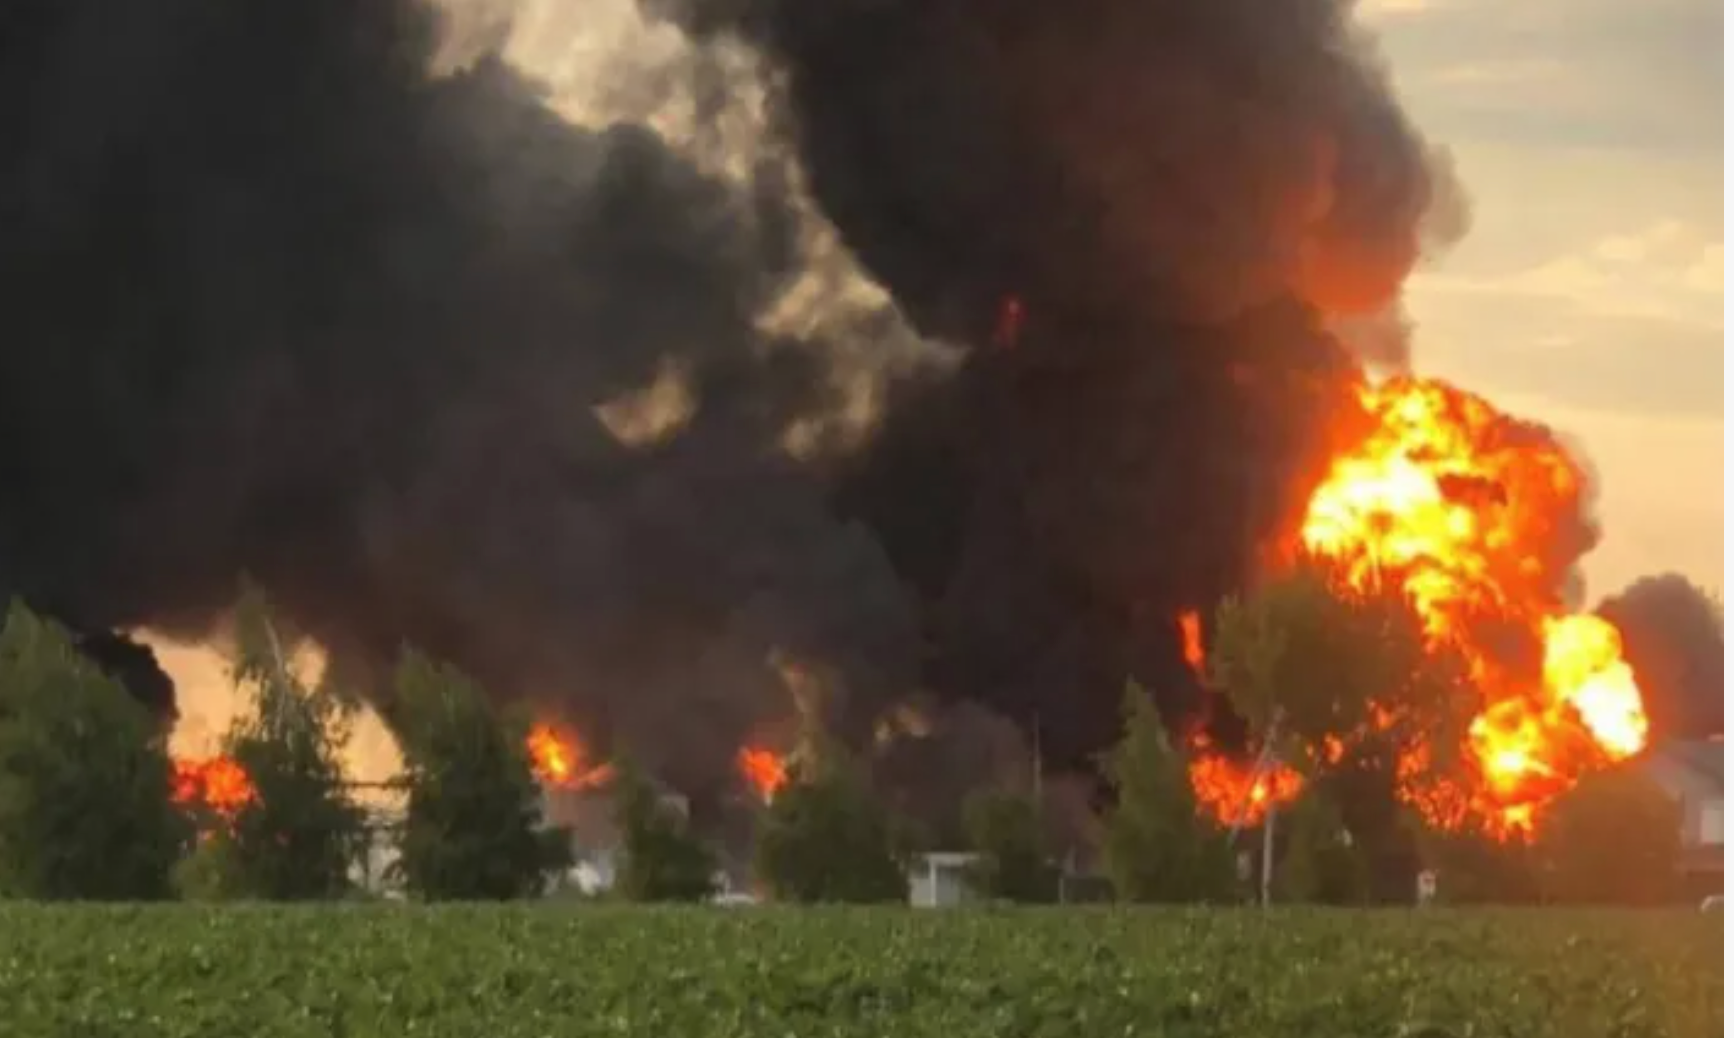 Chiến sự liên miên ở đông Ukraine, Nga bắn tên lửa trúng kho dầu lớn gây cháy dữ dội - Ảnh 2.